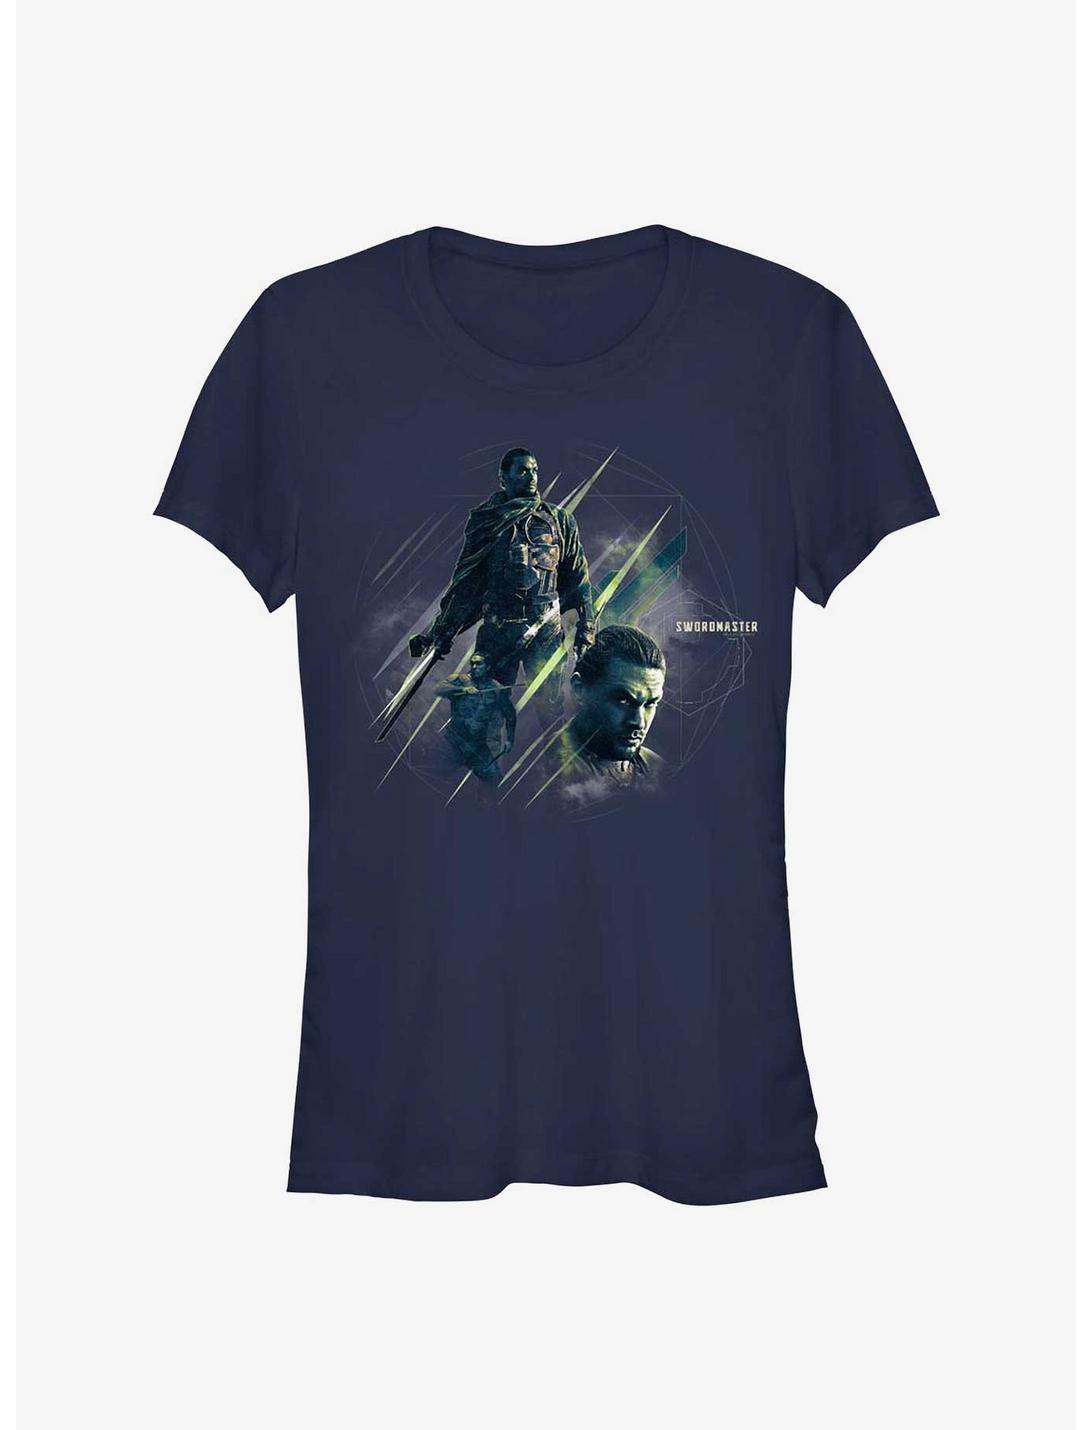 Dune Swordmaster Girls T-Shirt, NAVY, hi-res